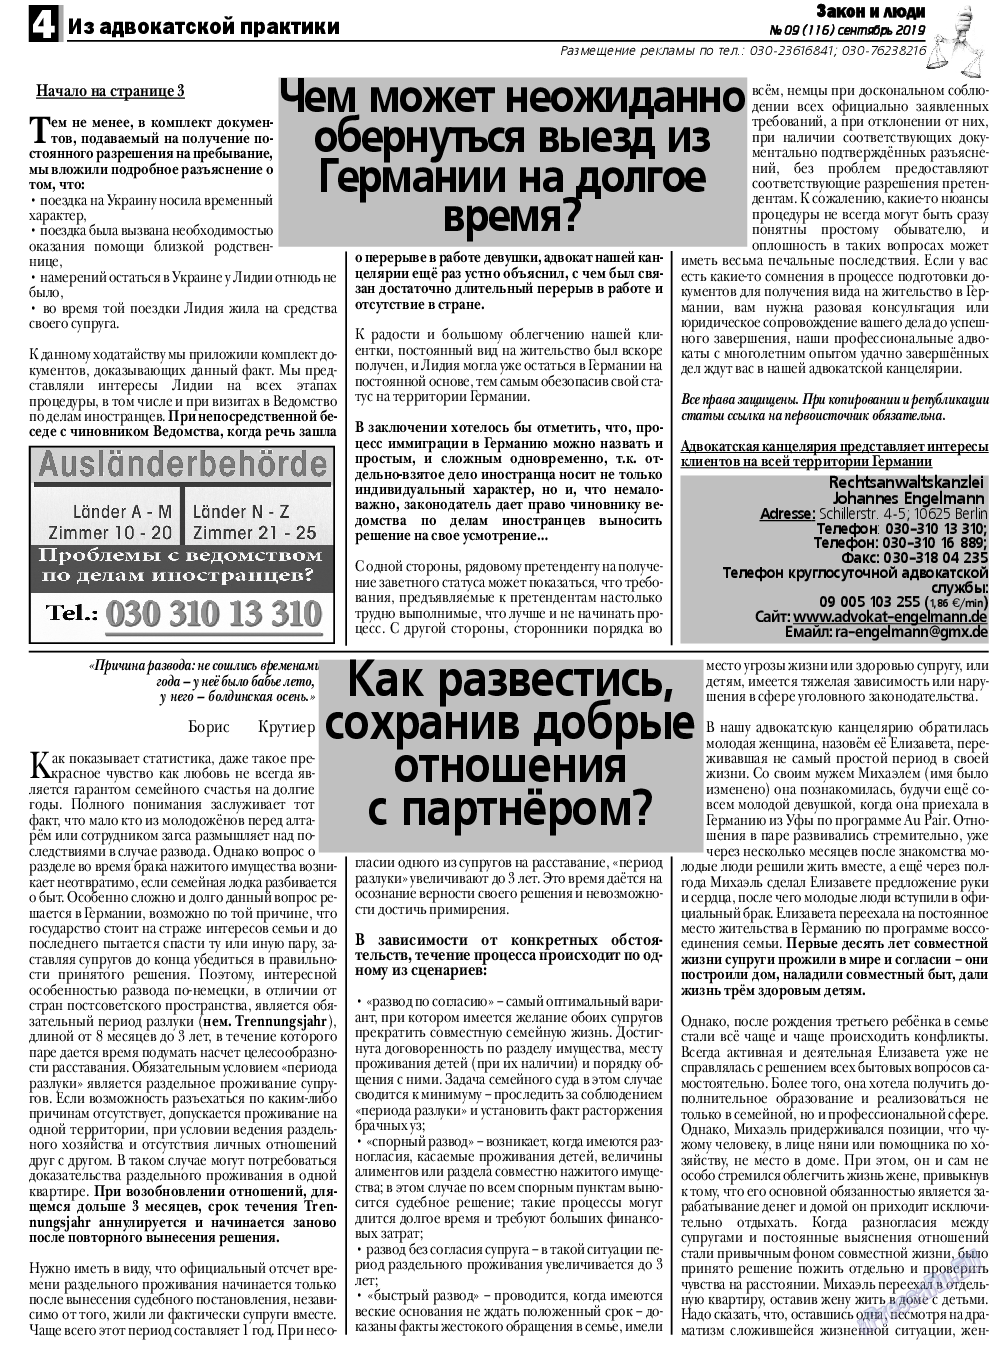 Закон и люди, газета. 2019 №9 стр.4